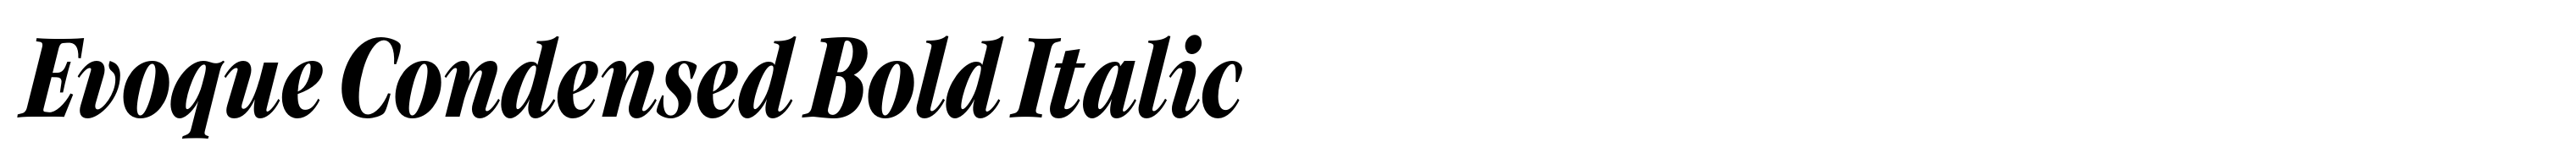 Evoque Condensed Bold Italic